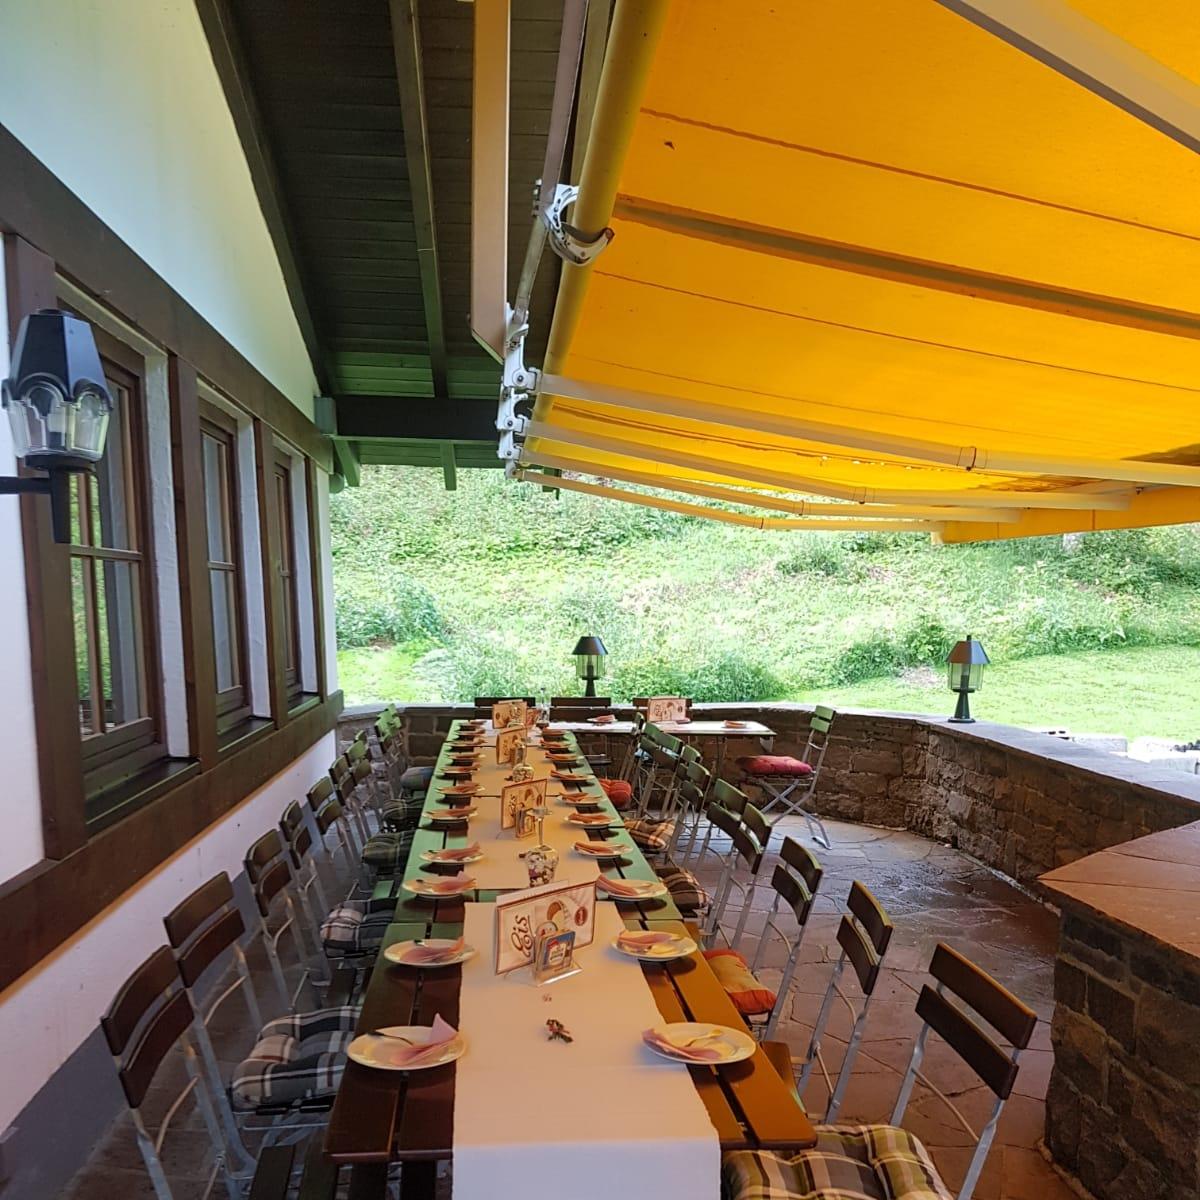 Restaurant "Waldschenke" in  Durach